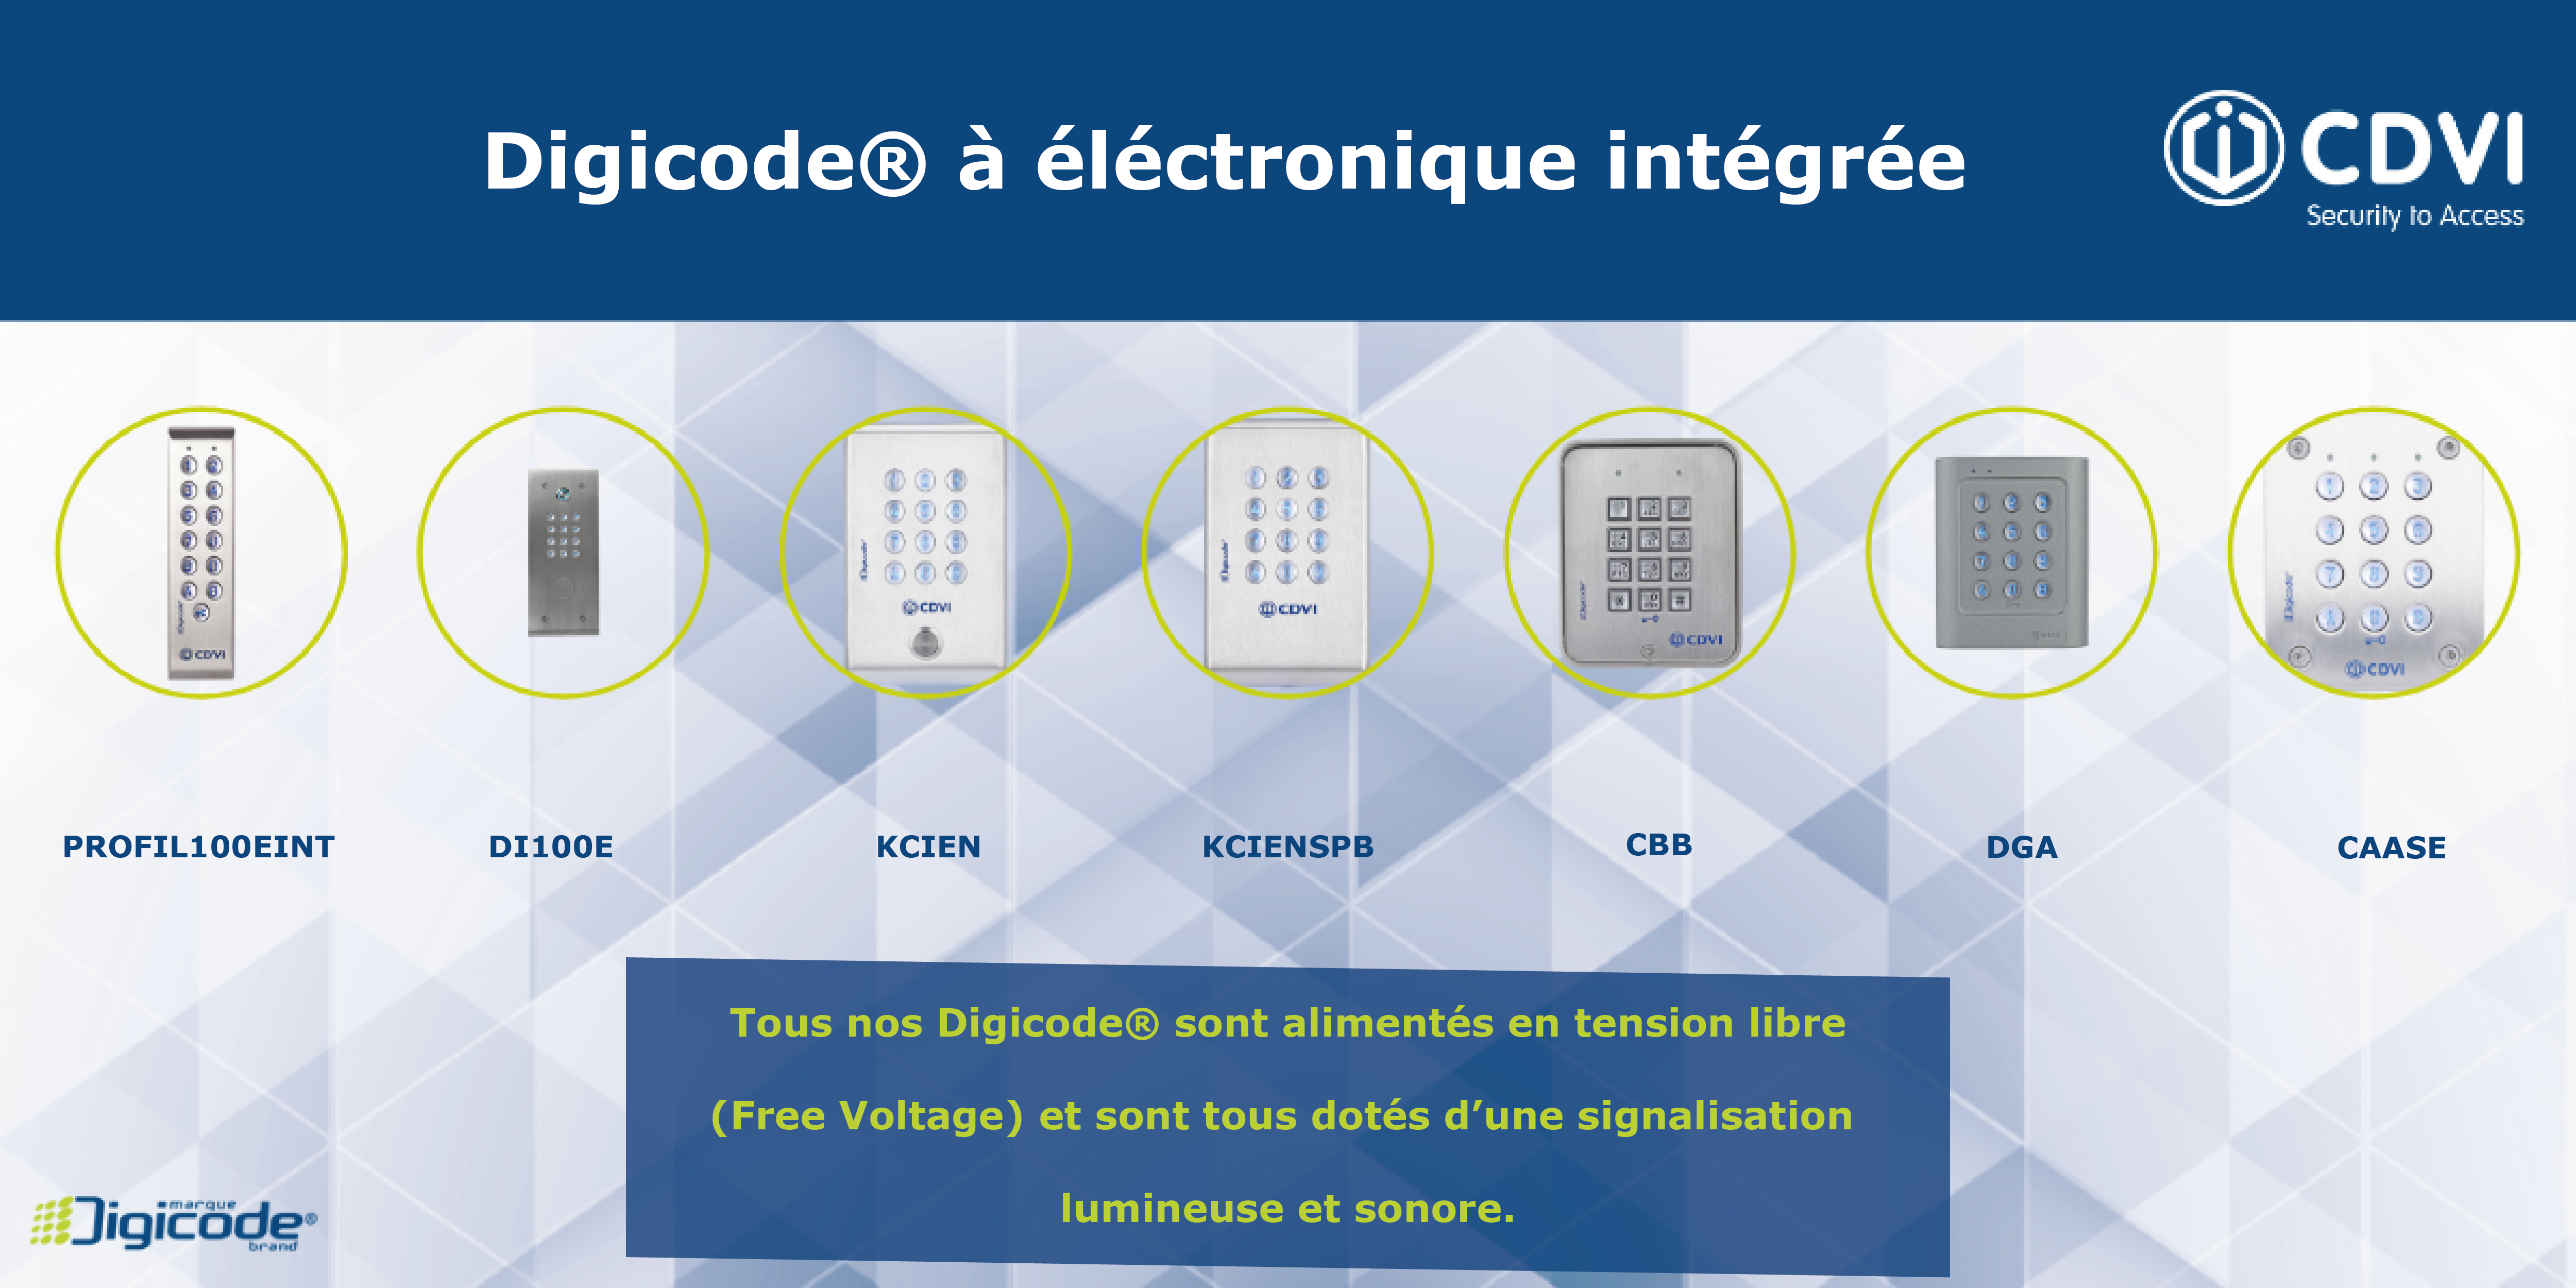 Clavier codé Digicode® à électronique intégrée par CDVI